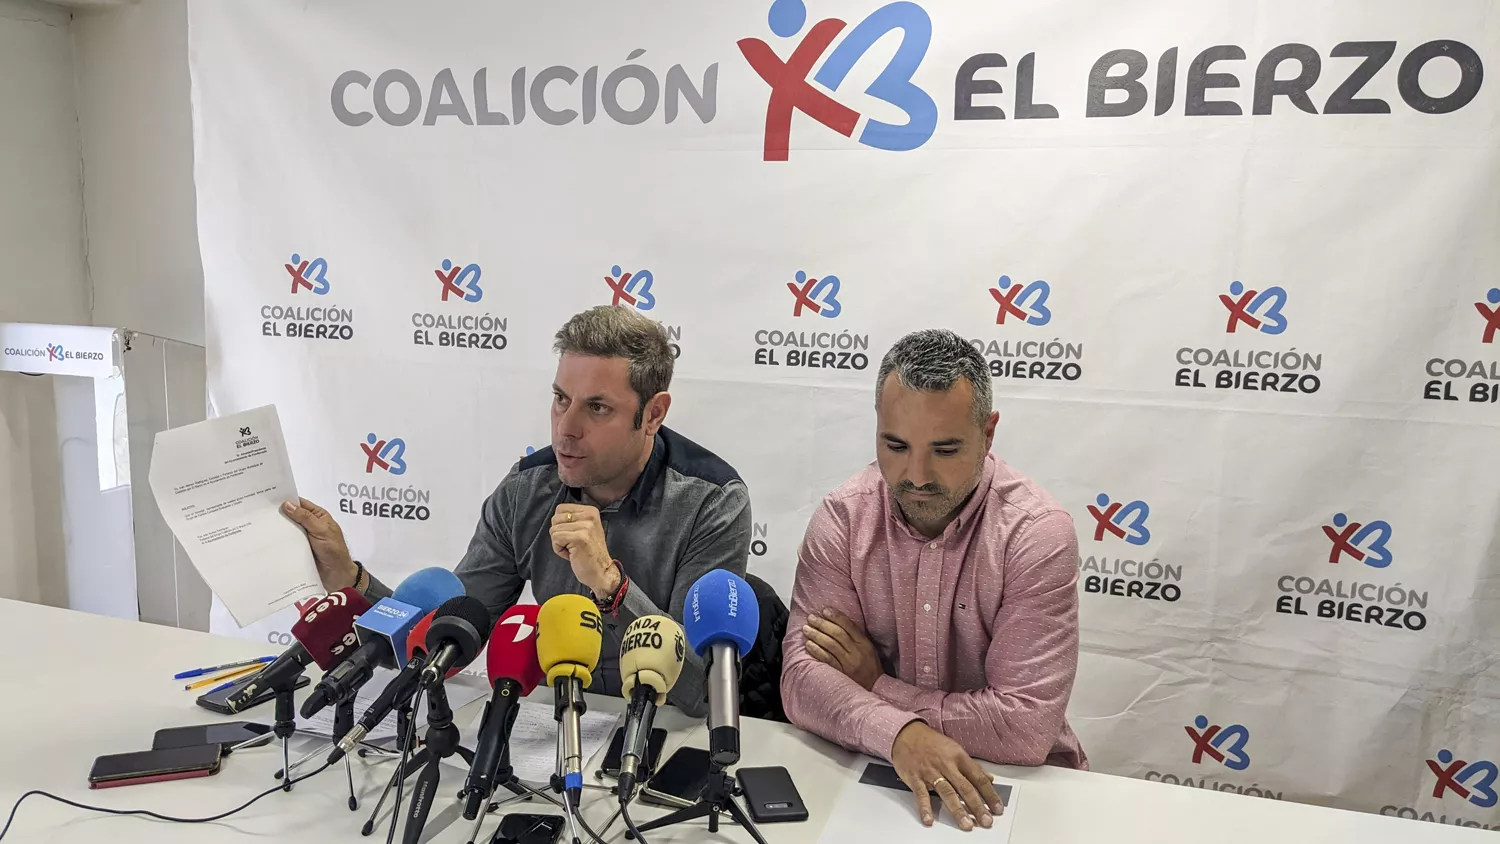 Imagen de la rueda de prensa de Coalición por El Bierzo